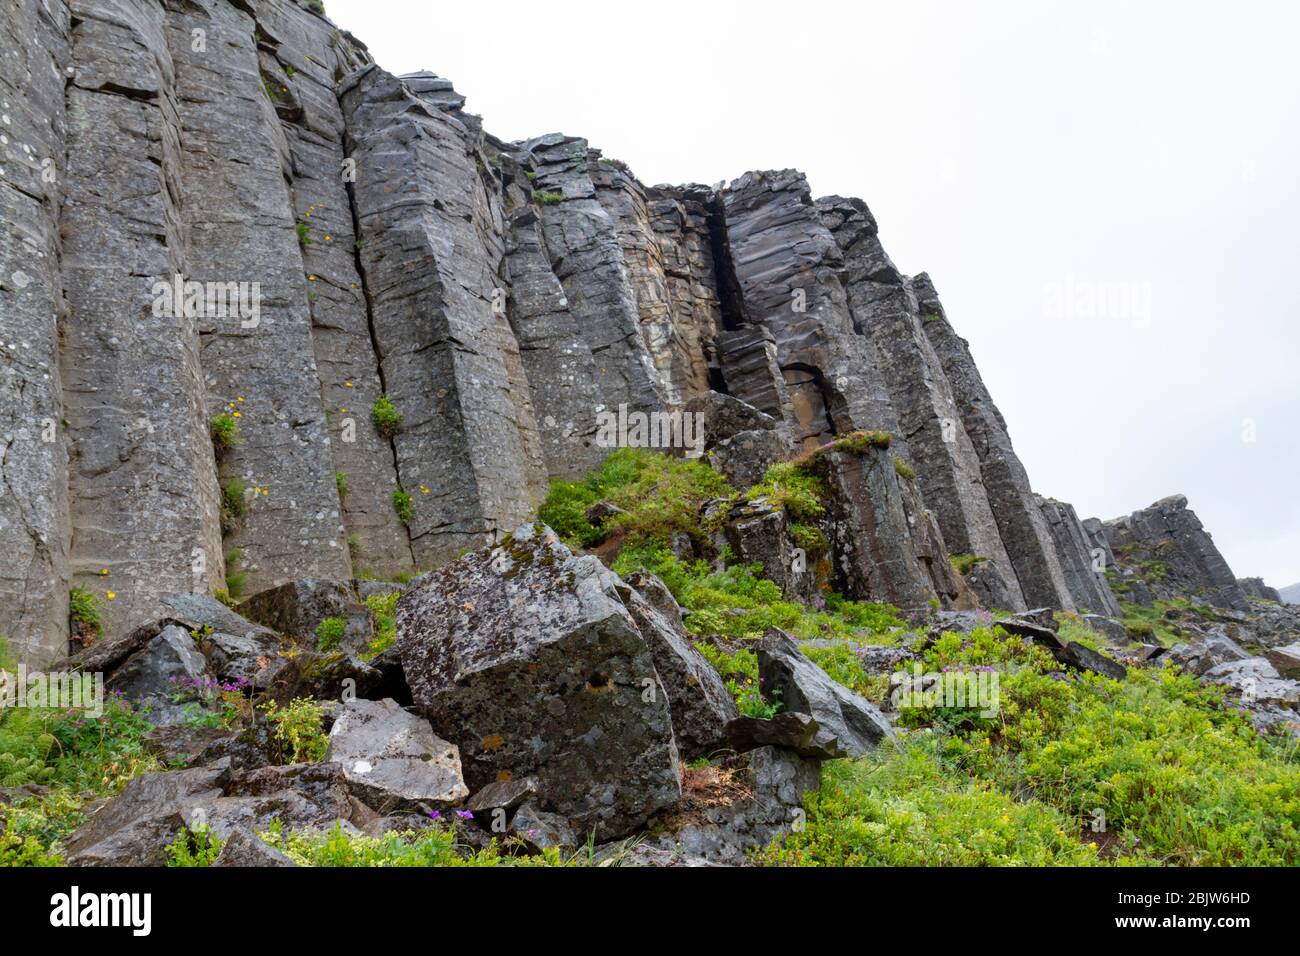 Les falaises de Gerðuberg (Gerduberg) est une falaise de dolerite, une roche de basalte à grain grossier, située sur la péninsule ouest de Snæfellsnes, en Islande. Banque D'Images